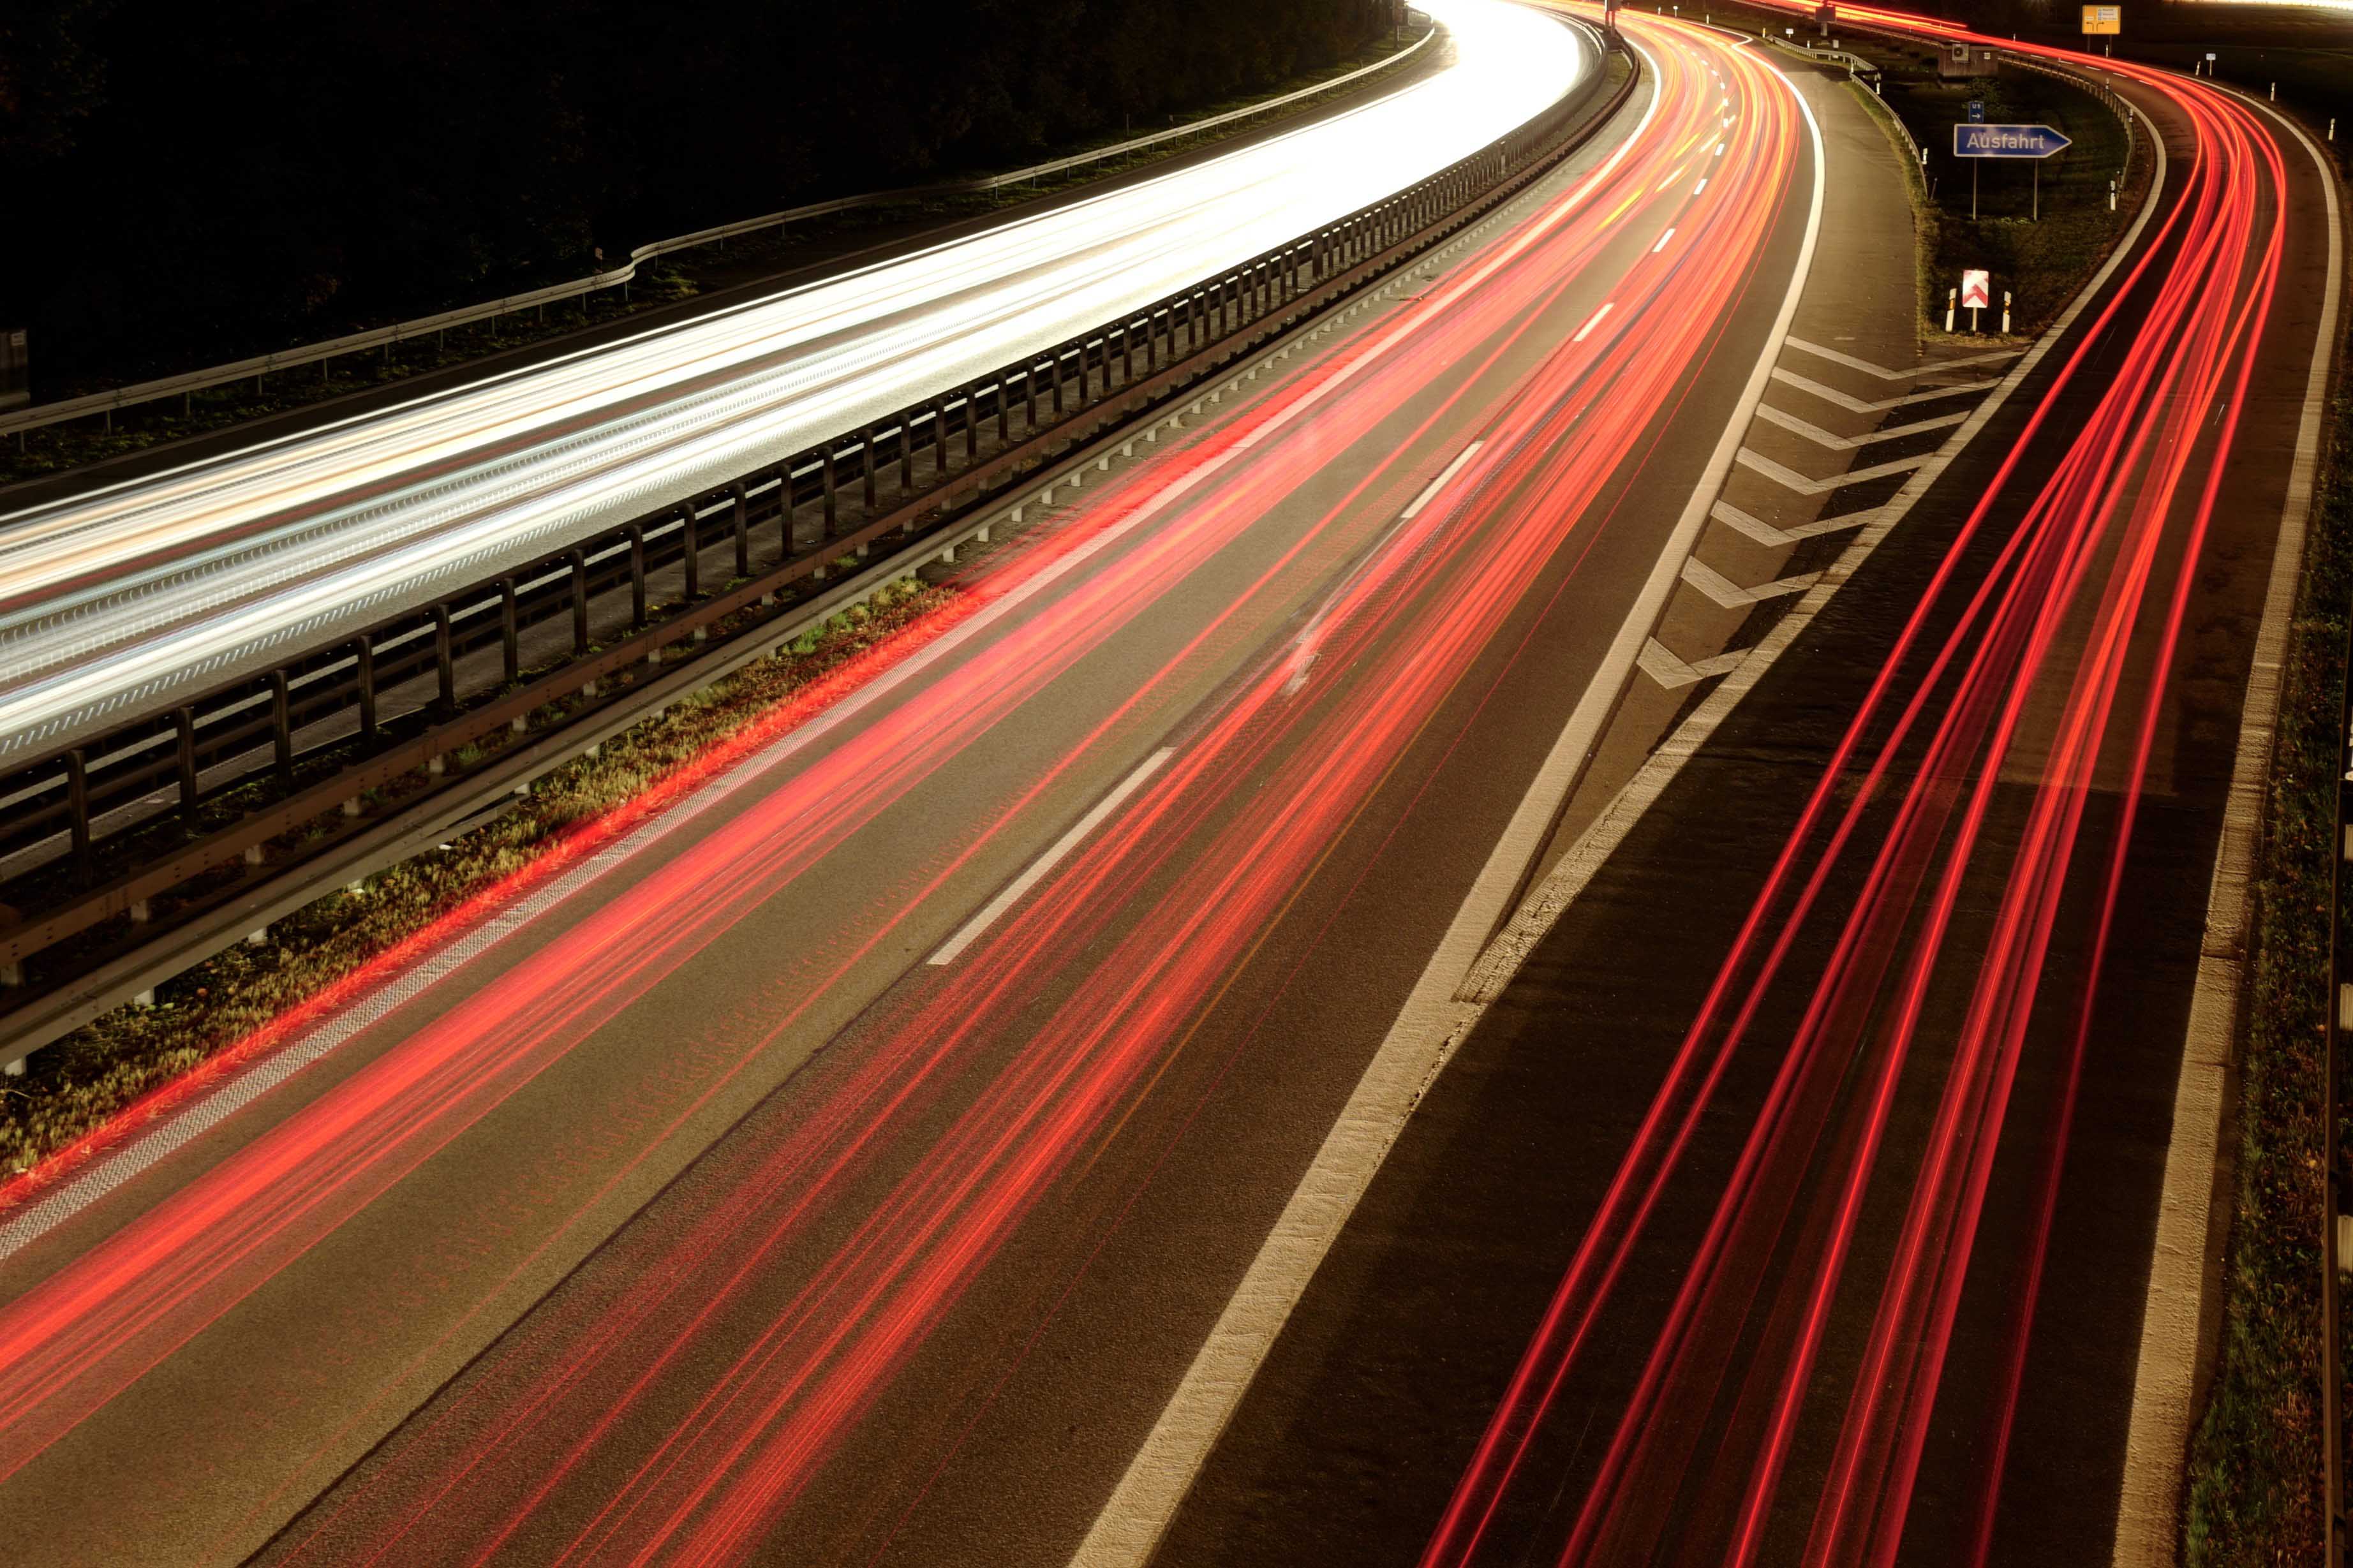 Das Bild zeigt eine belebte Autobahn bei Nacht. Die roten Rücklichtern der Autos, sind auf der rechten Seite des Bildes zu sehen. Weiße Lichtspuren, die Scheinwerfern der Autos, sind auf der linken Seite des Bildes sichtbar. Die Kurvenform der Straße und die Lichtspuren erzeugen ein dynamisches und kinetisches Gefühl im Bild. Hochauflösene Aufnahme von Simon Fritz mit seiner Leica Kamera.